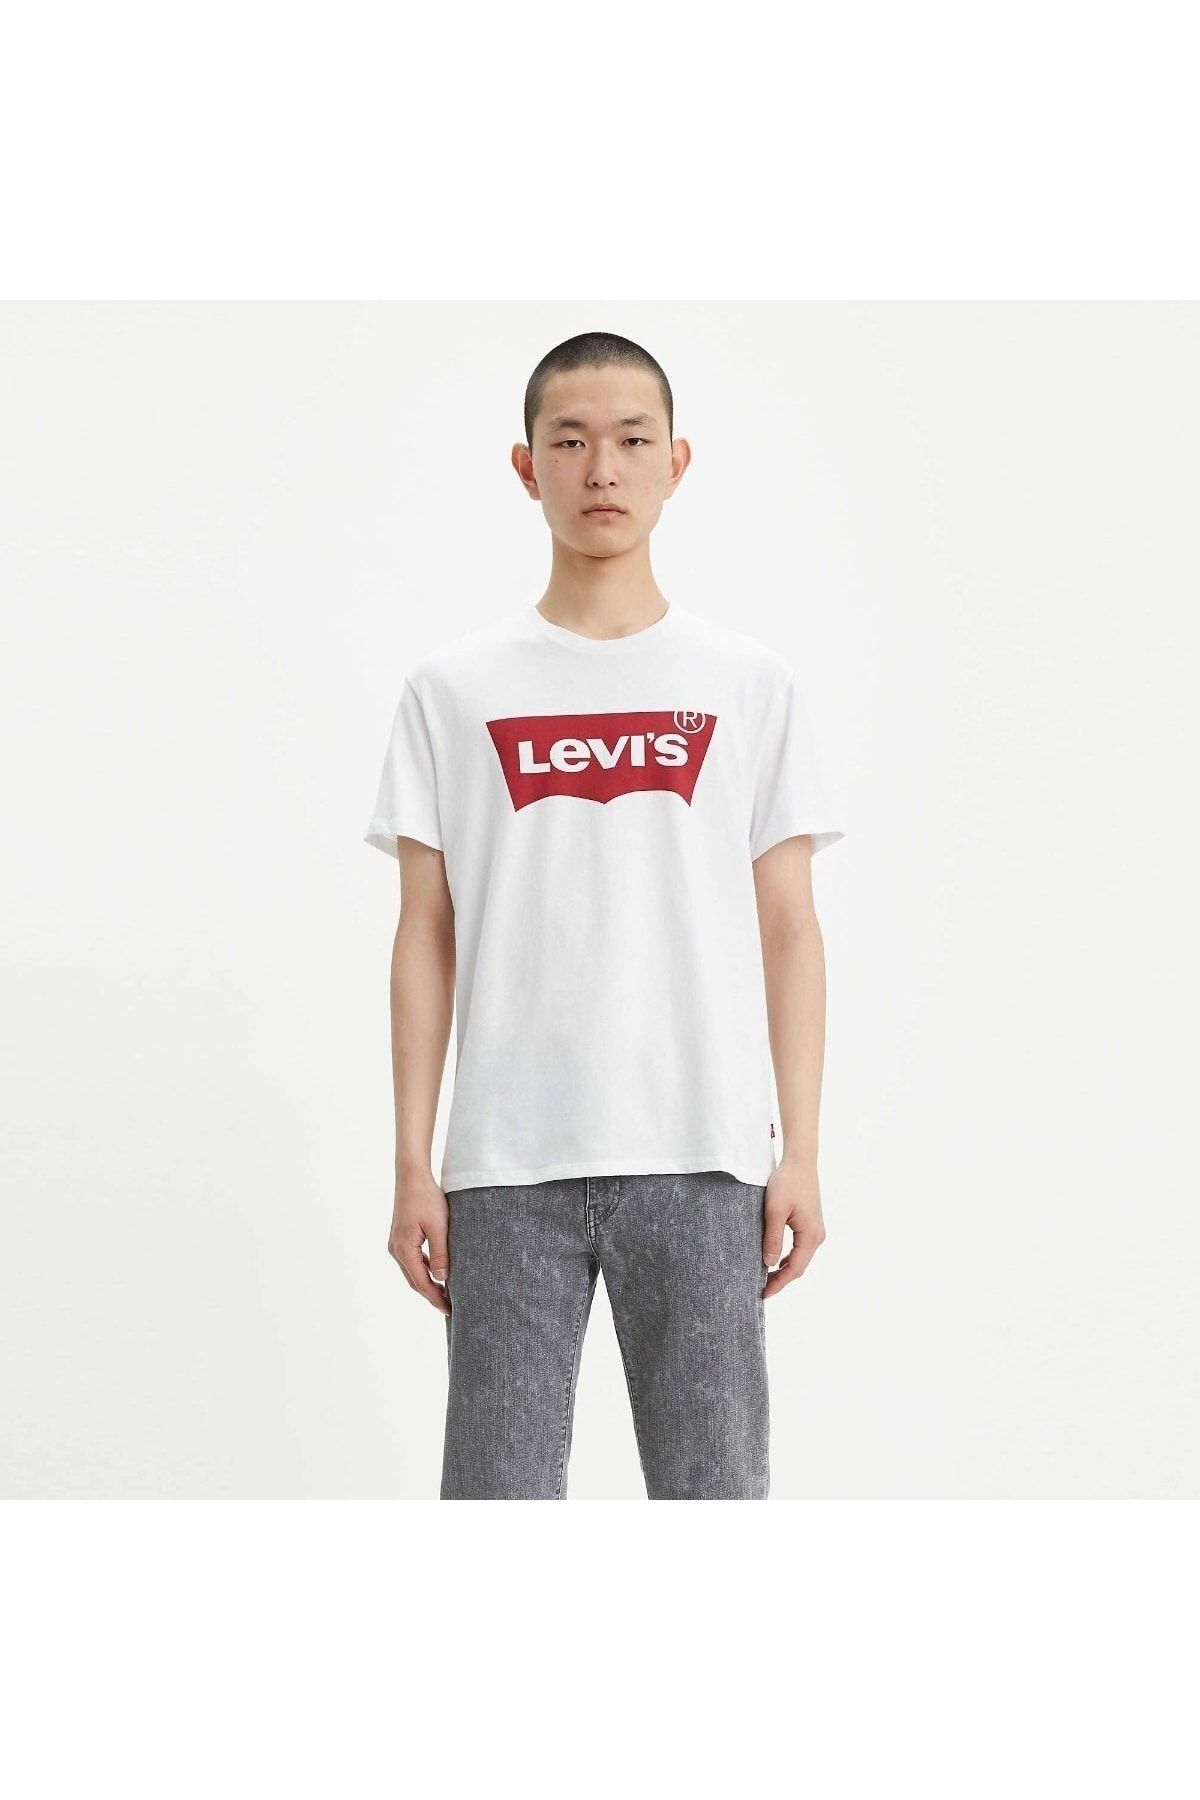 Levi's تی شرت ست این گرافیکی